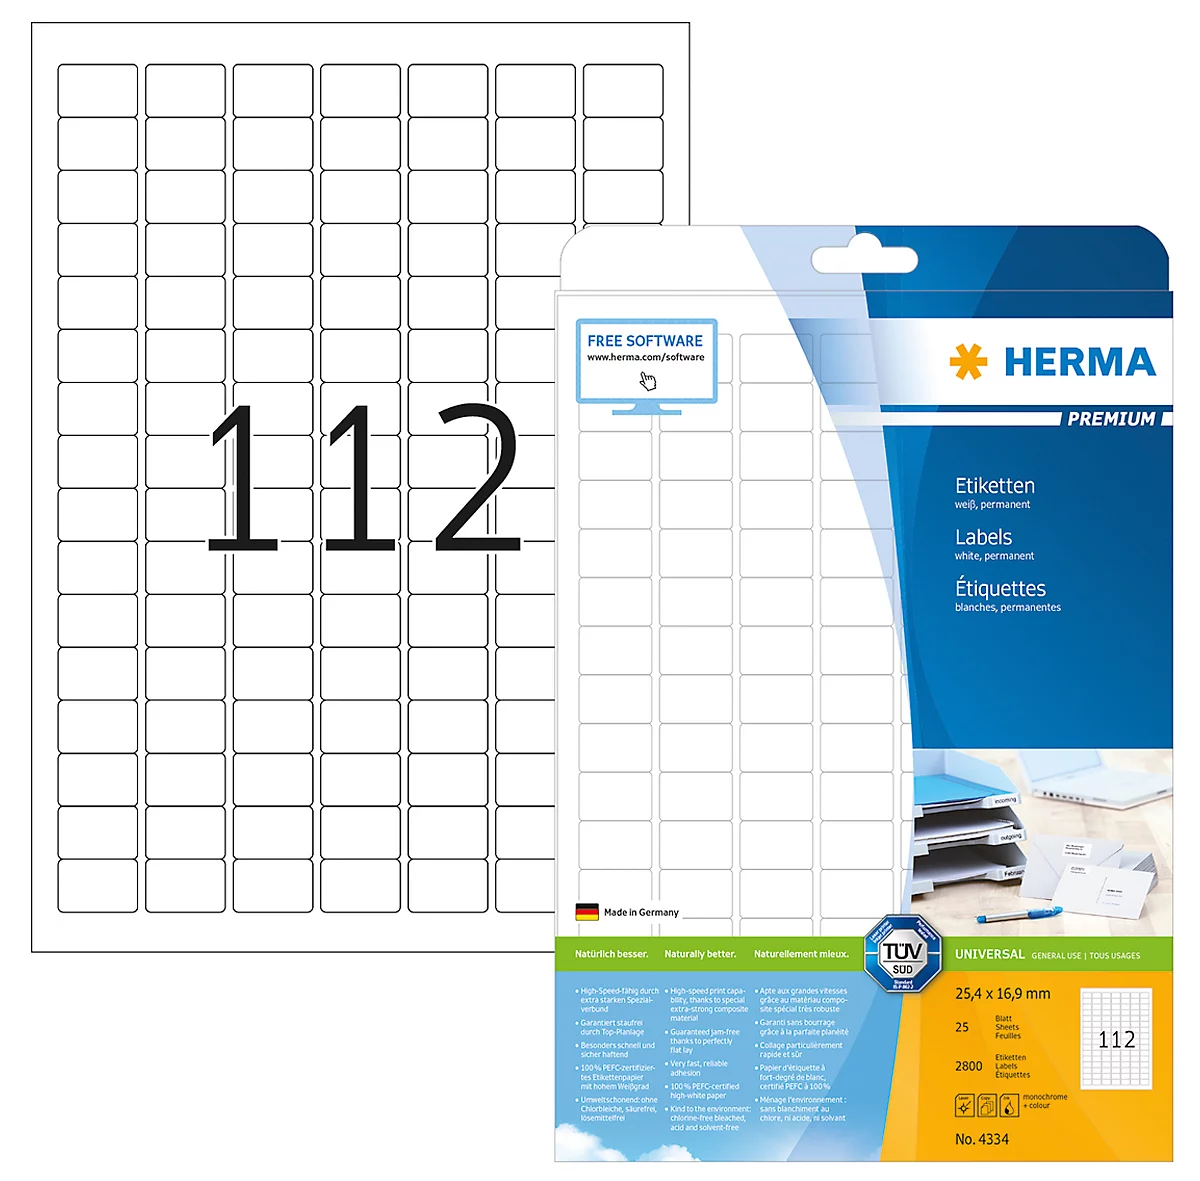 Herma Étiquettes d'adresse Premium format de feuille A6 105x148 mm, blanche